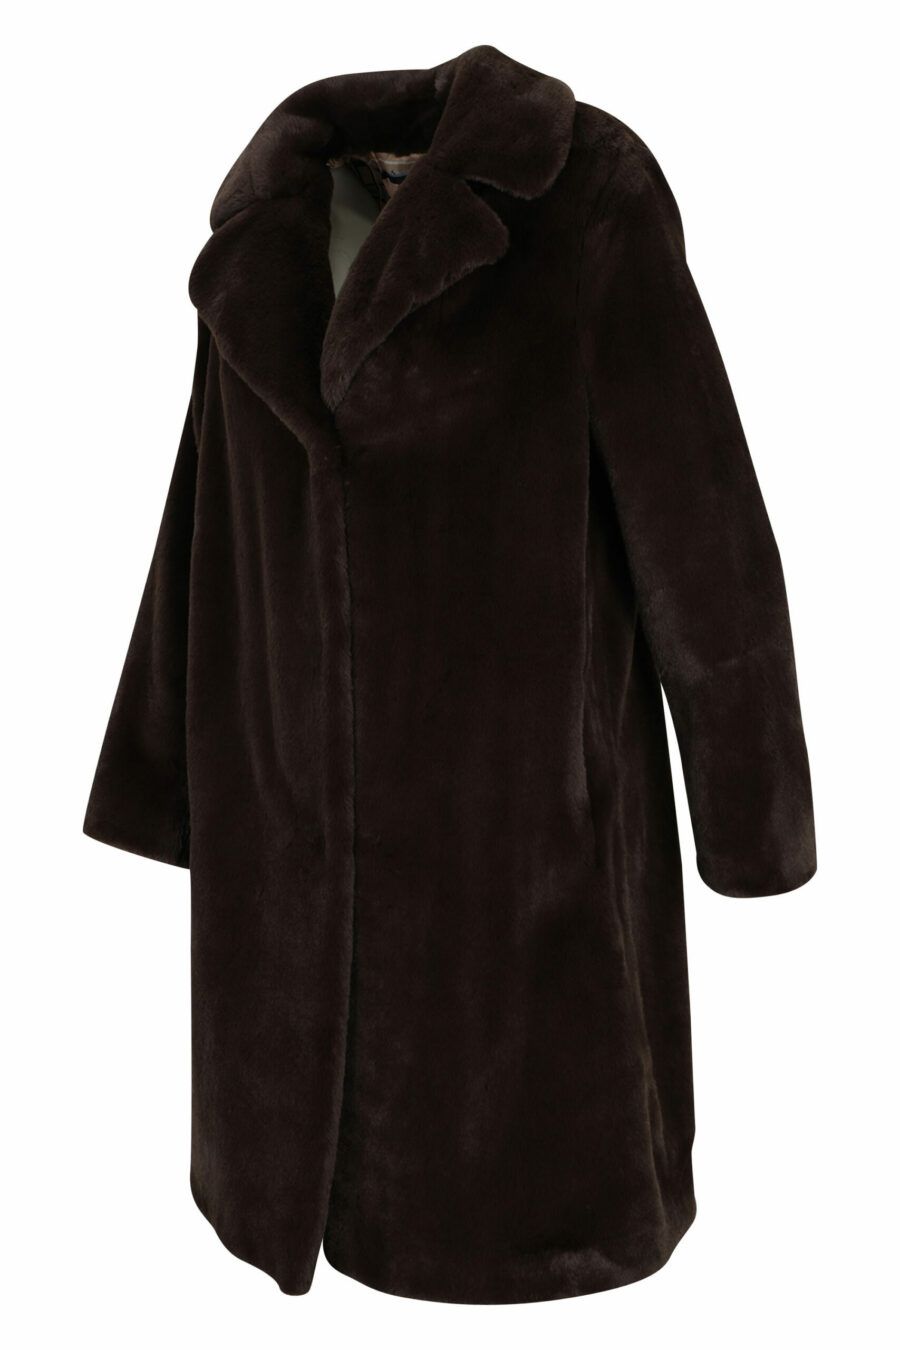 Abrigo marrón con pelo sintético efecto castor y forro interior monograma - 8055721726878 1 scaled